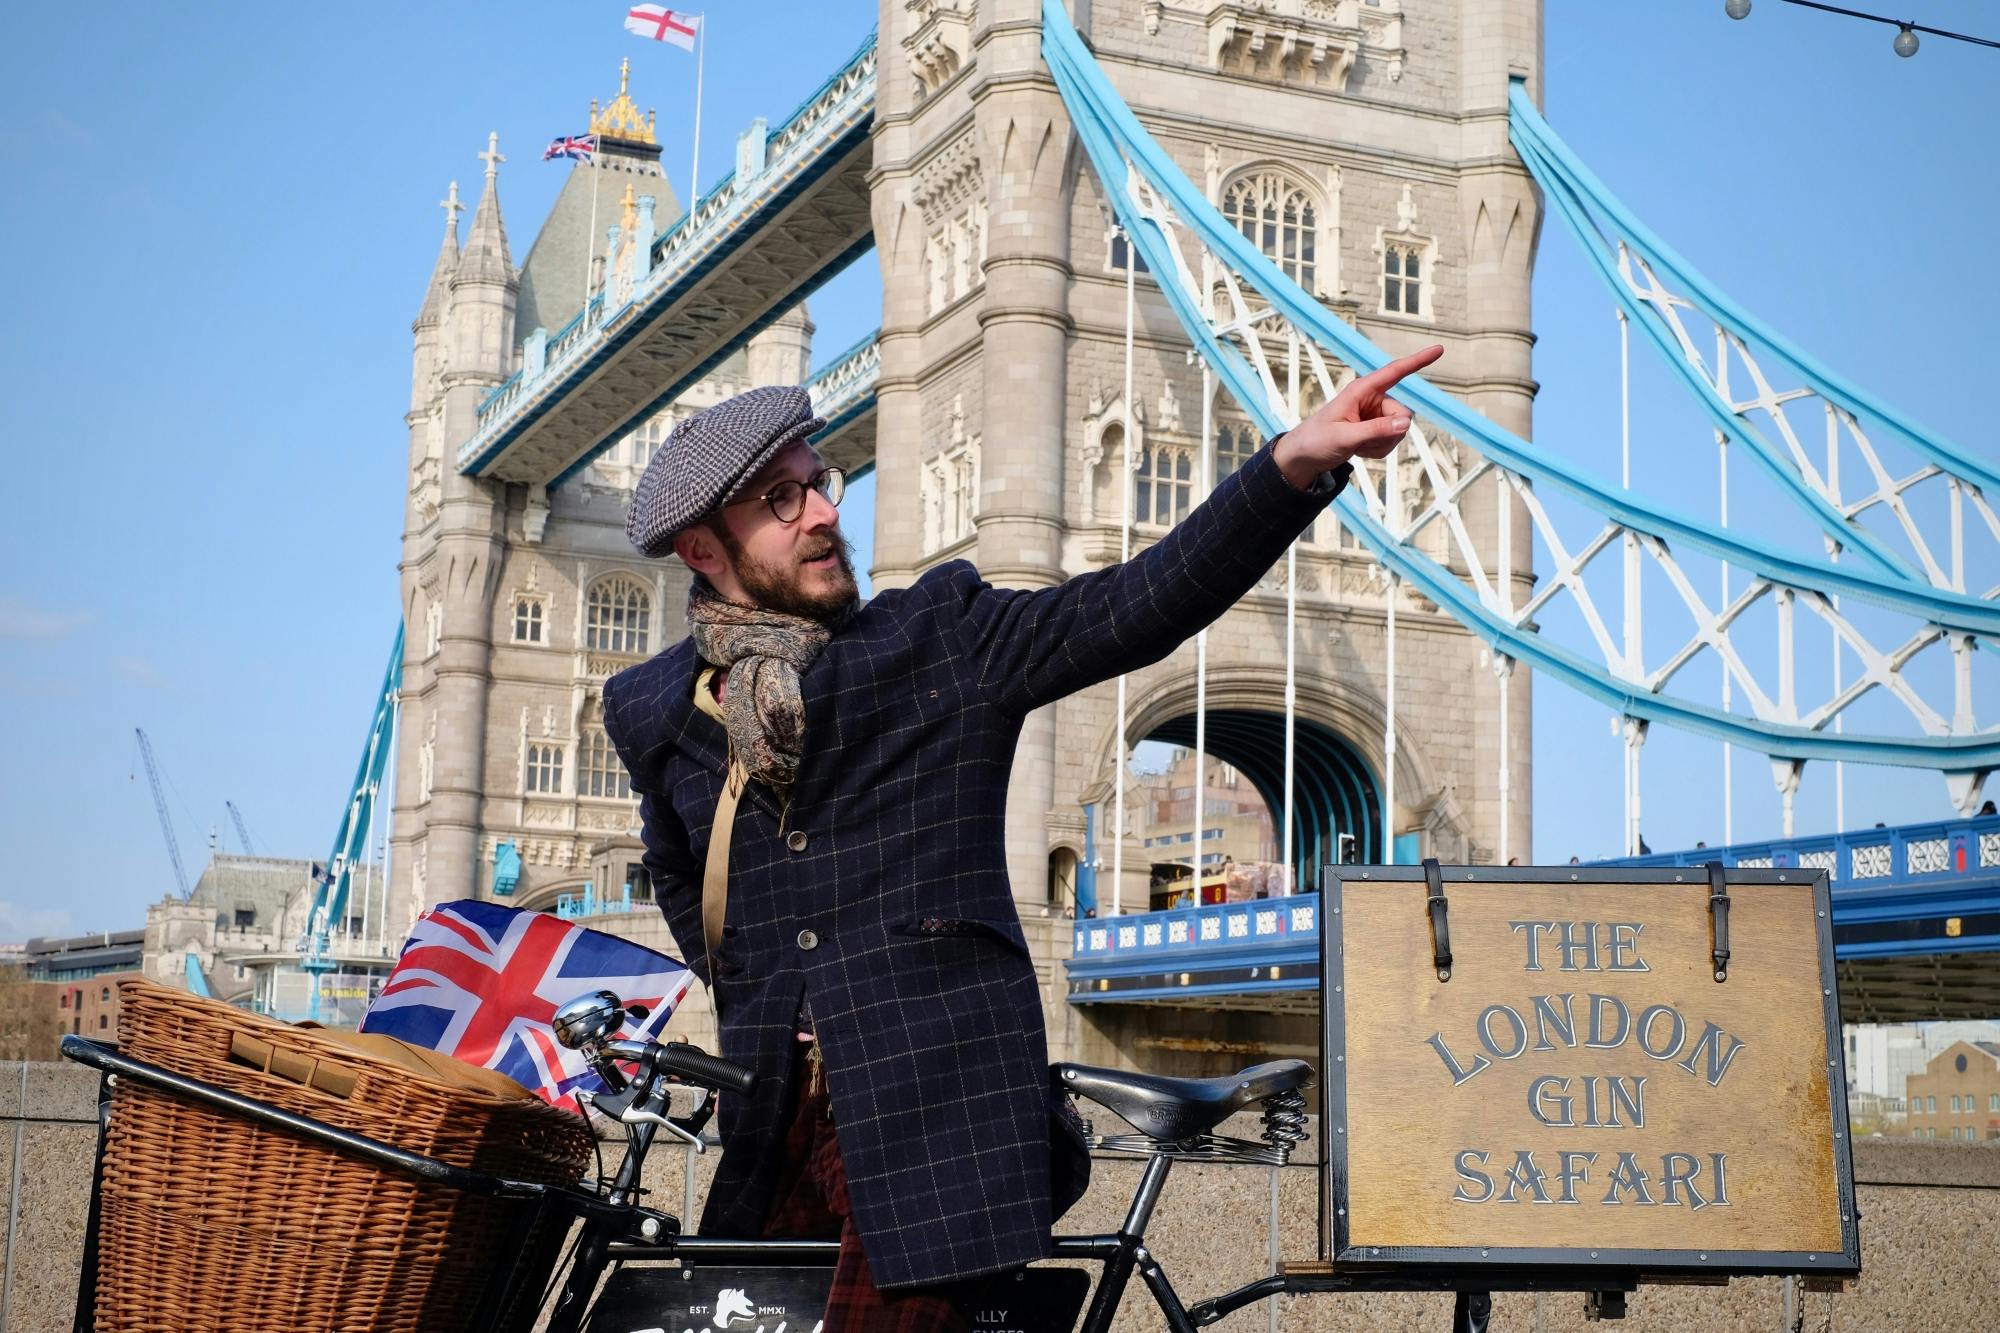 Visita guiada en bicicleta "London gin safari" con degustación de ginebra